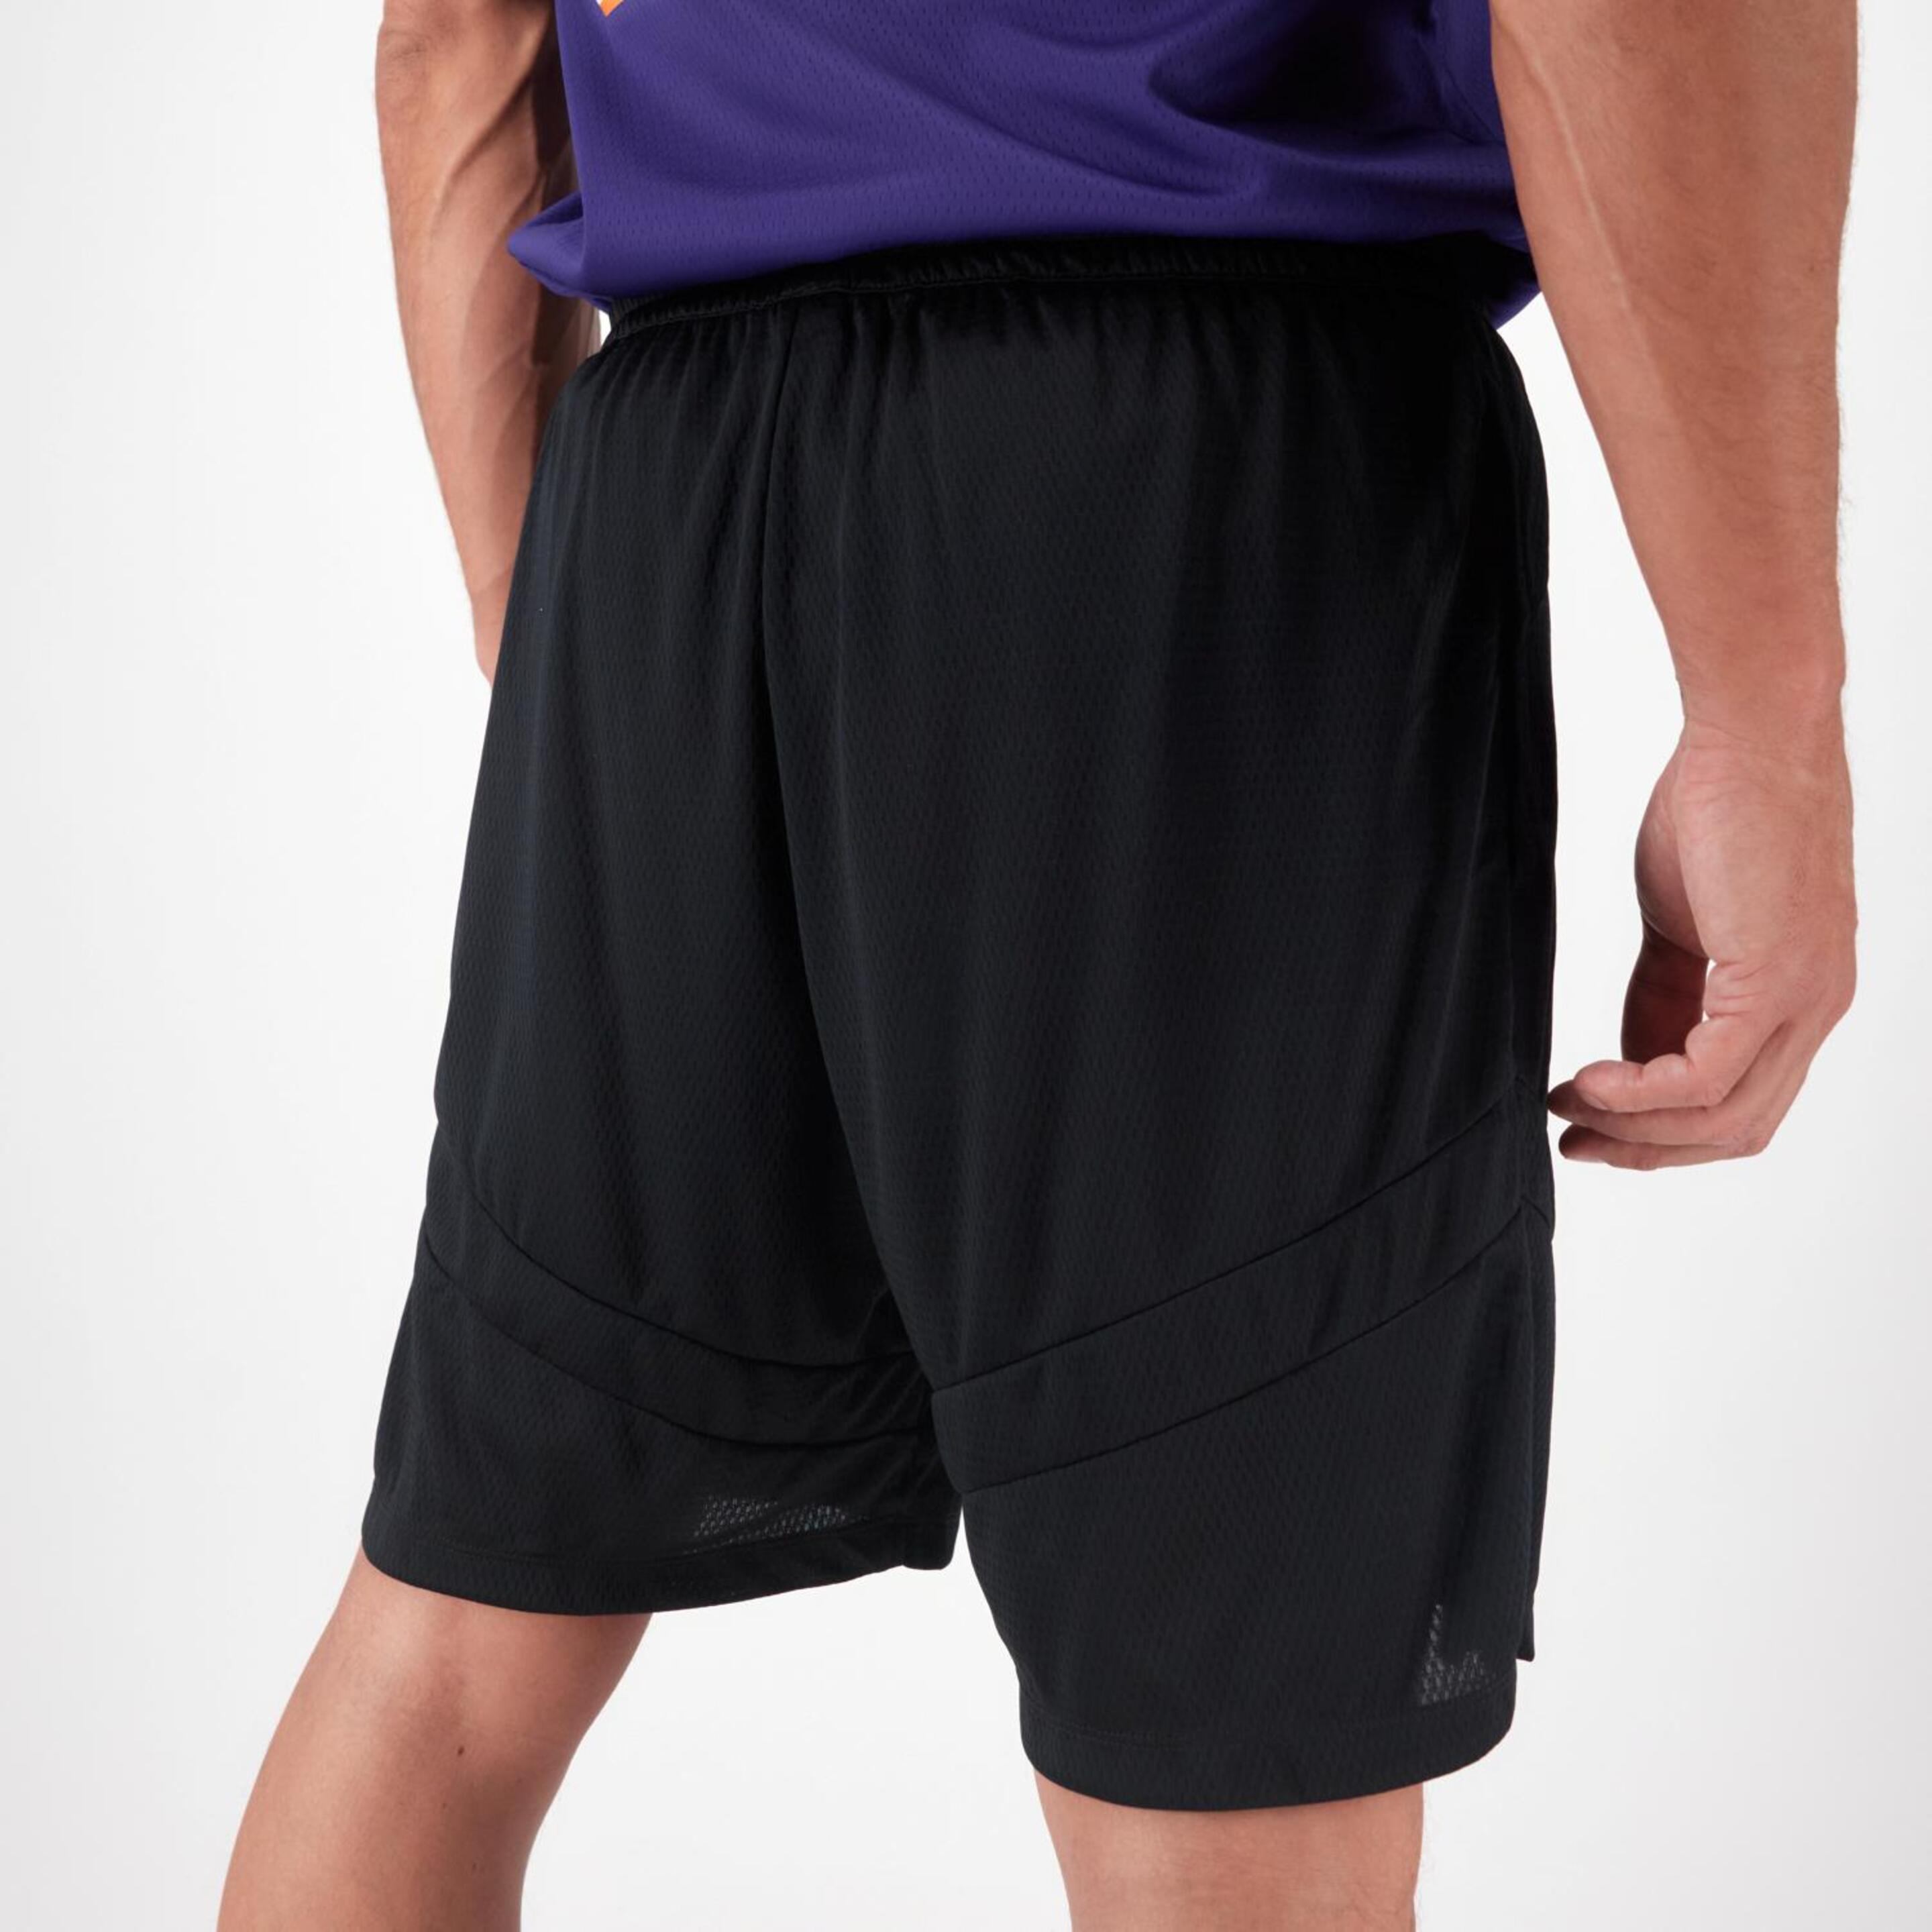 Nike Icon - Negro - Pantalón Baloncesto Hombre  | Sprinter